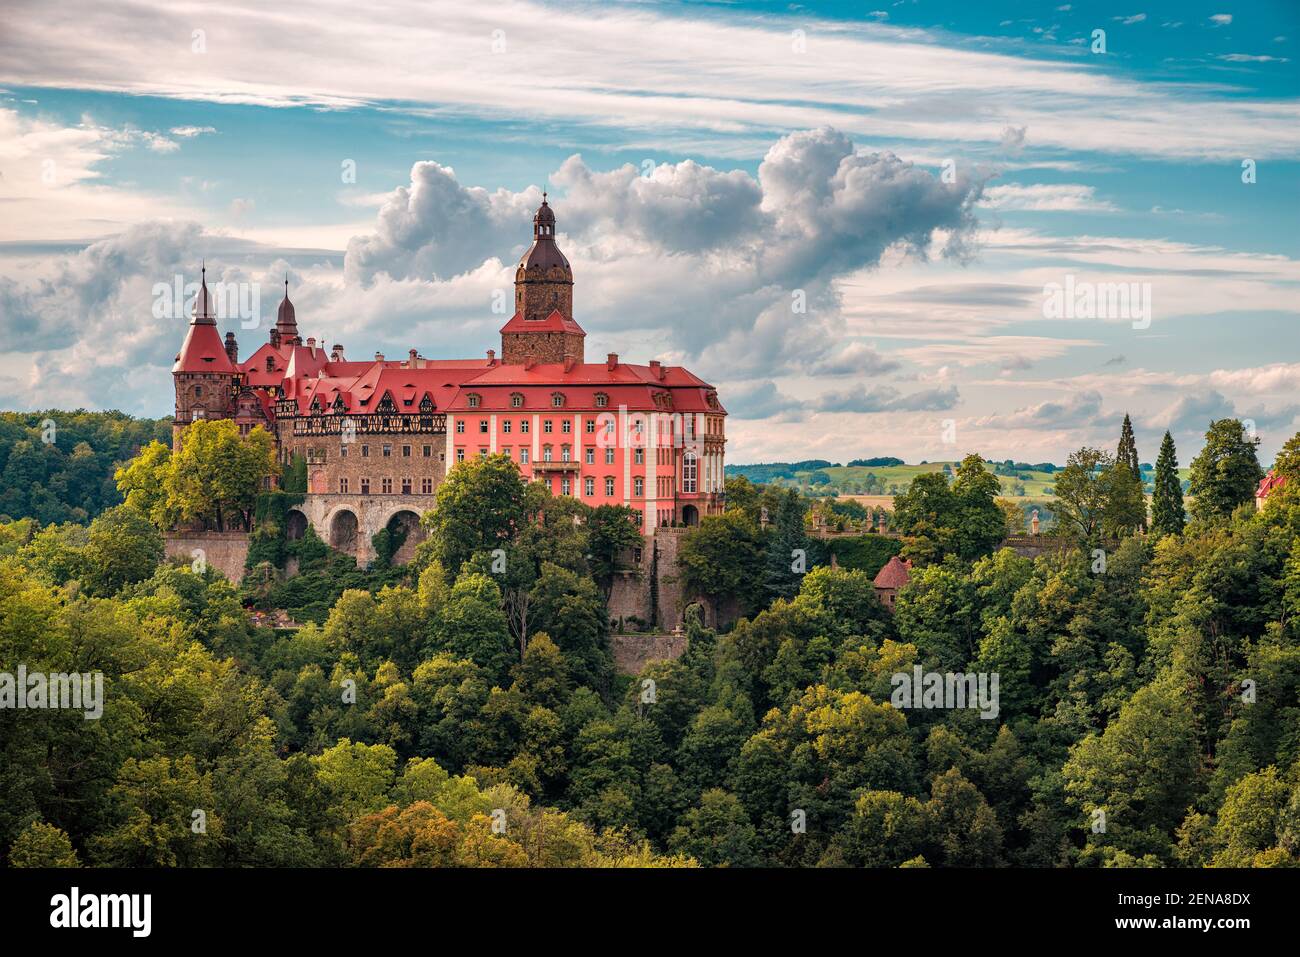 Książ Castle in Wałbrzych Stock Photo